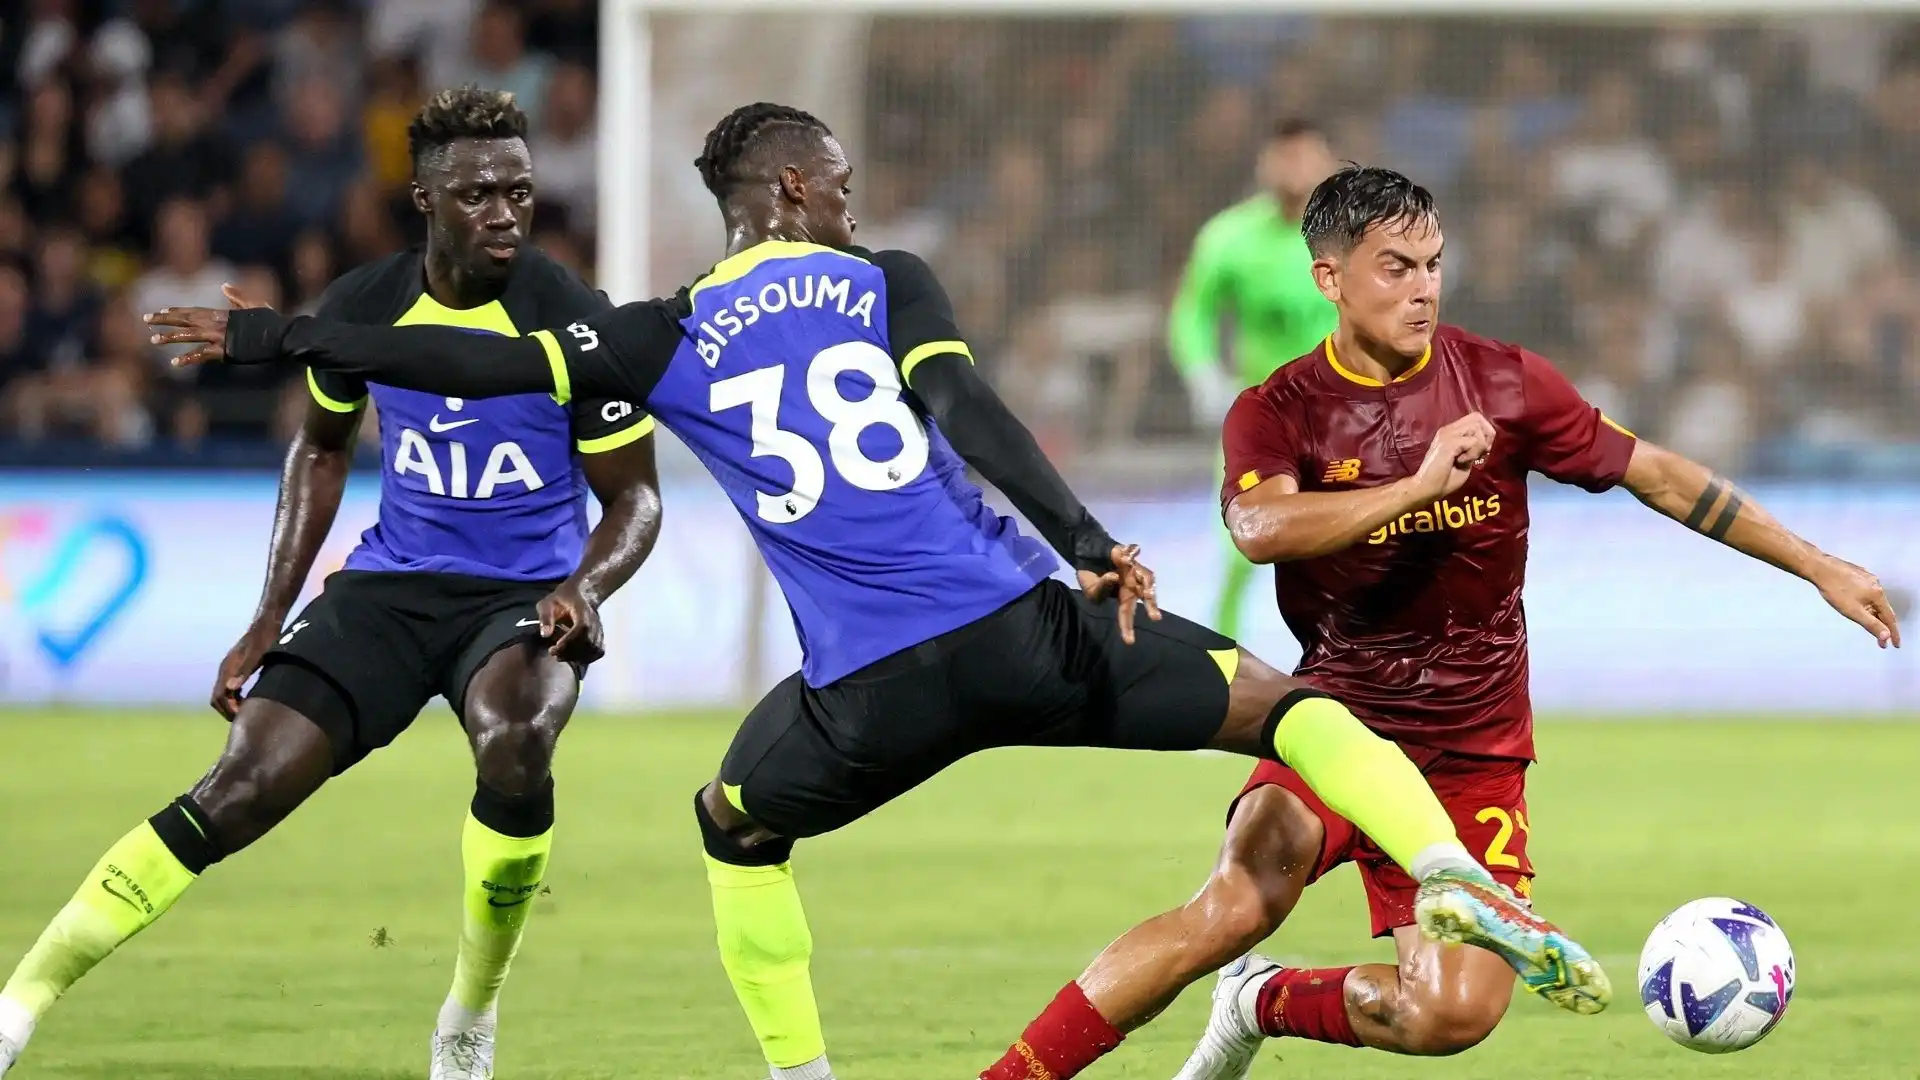 La Roma ha piegato per 1-0 il Tottenham di Antonio Conte nell'amichevole disputata ad Haifa: tra i protagonisti della sfida, Paulo Dybala.